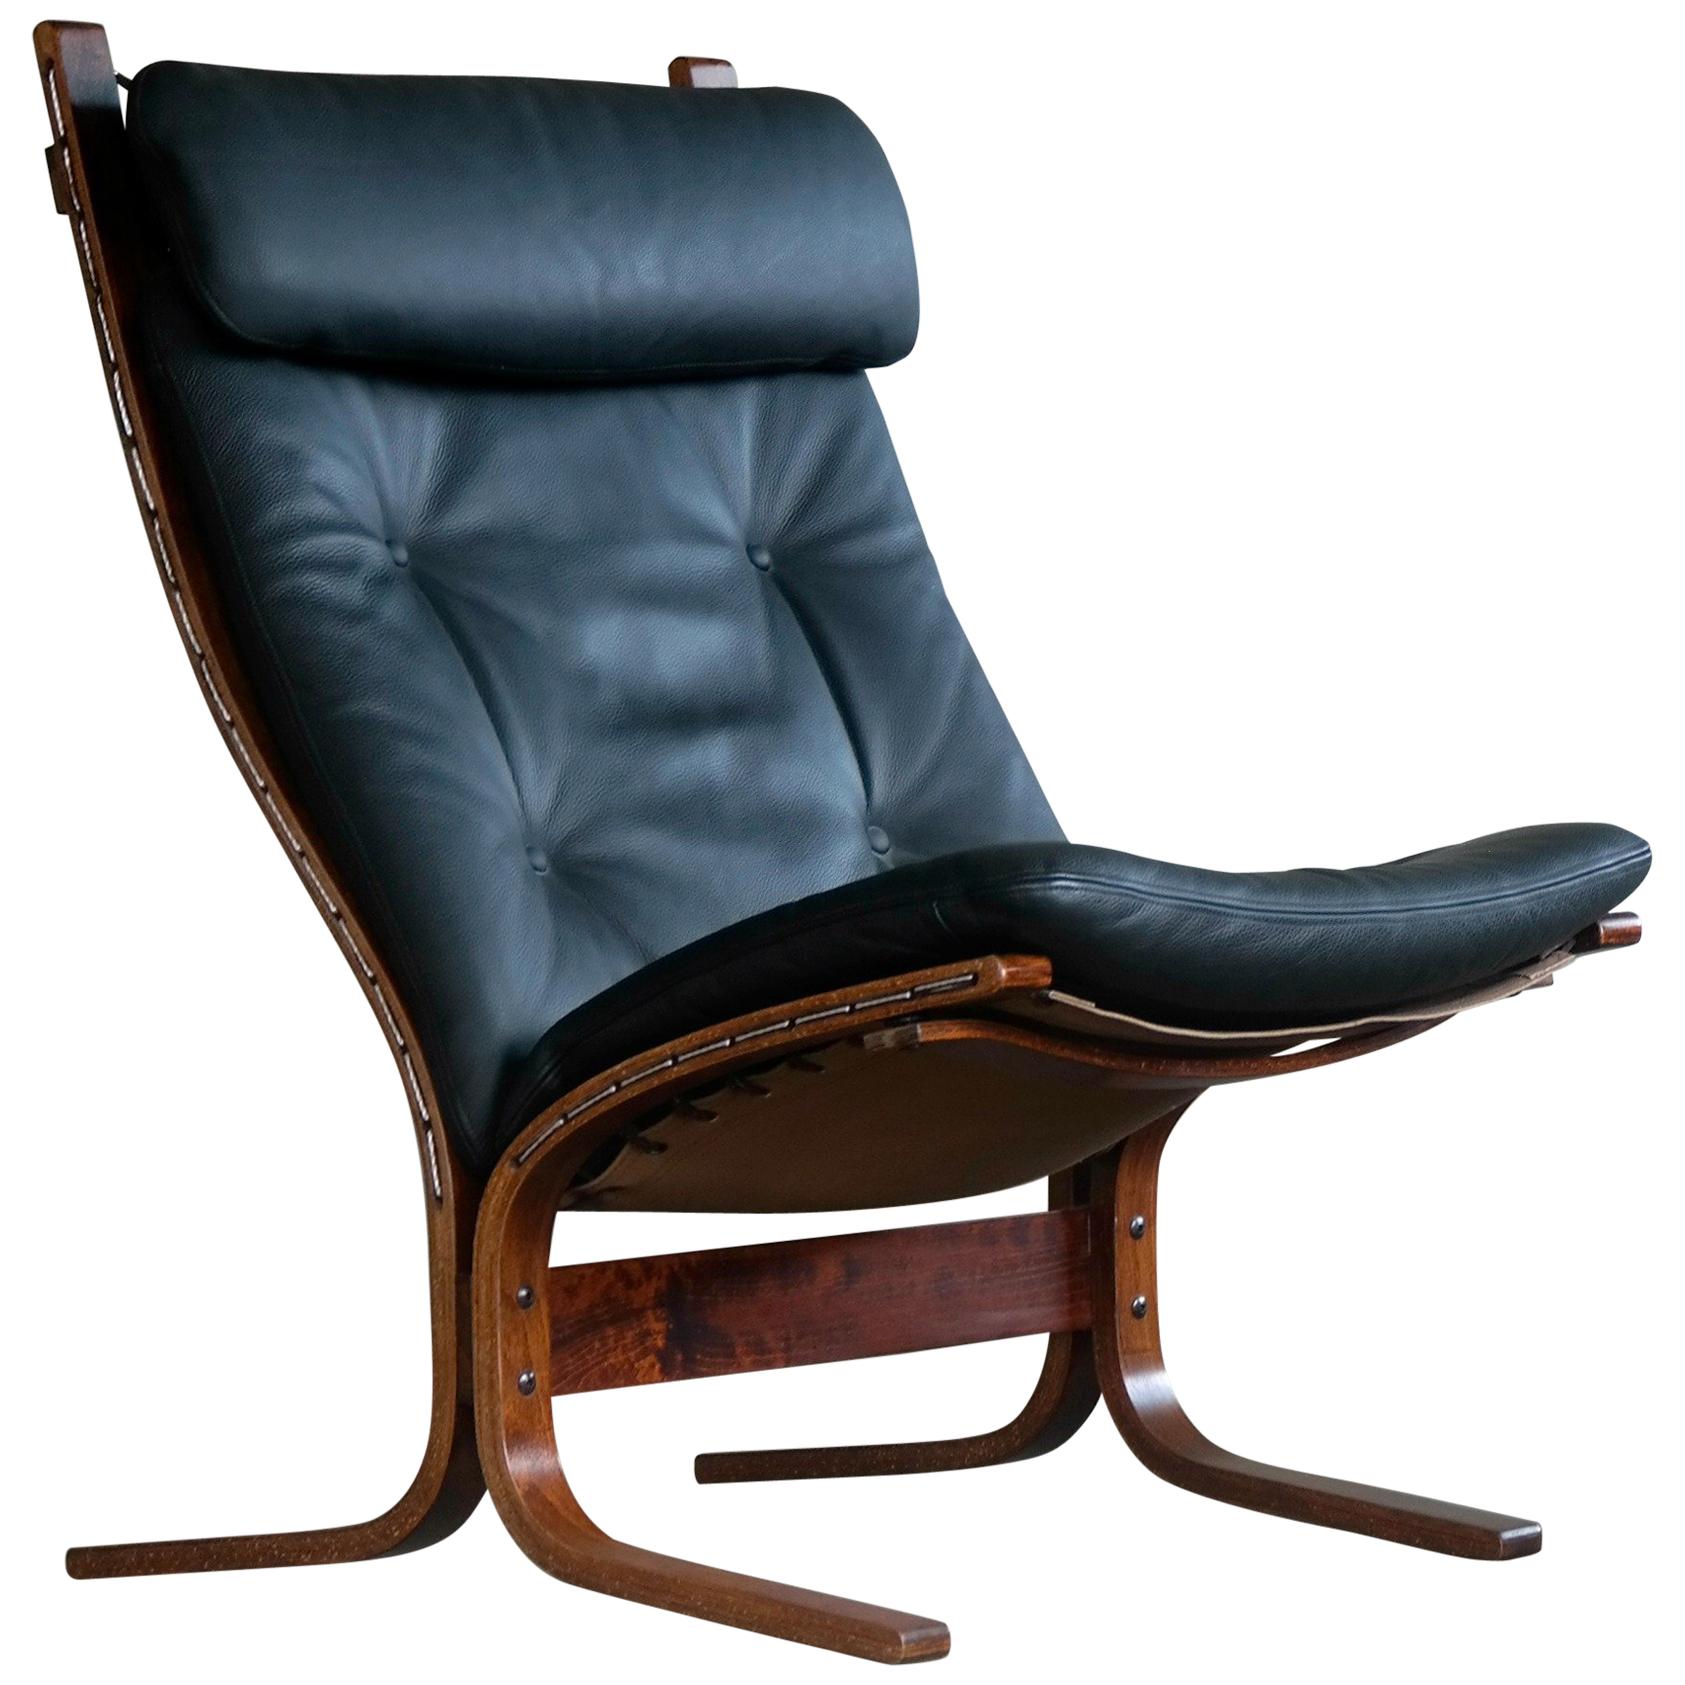 Classic Ingmar Relling Easy Chairs Model "Siesta" for Westnofa, Norway